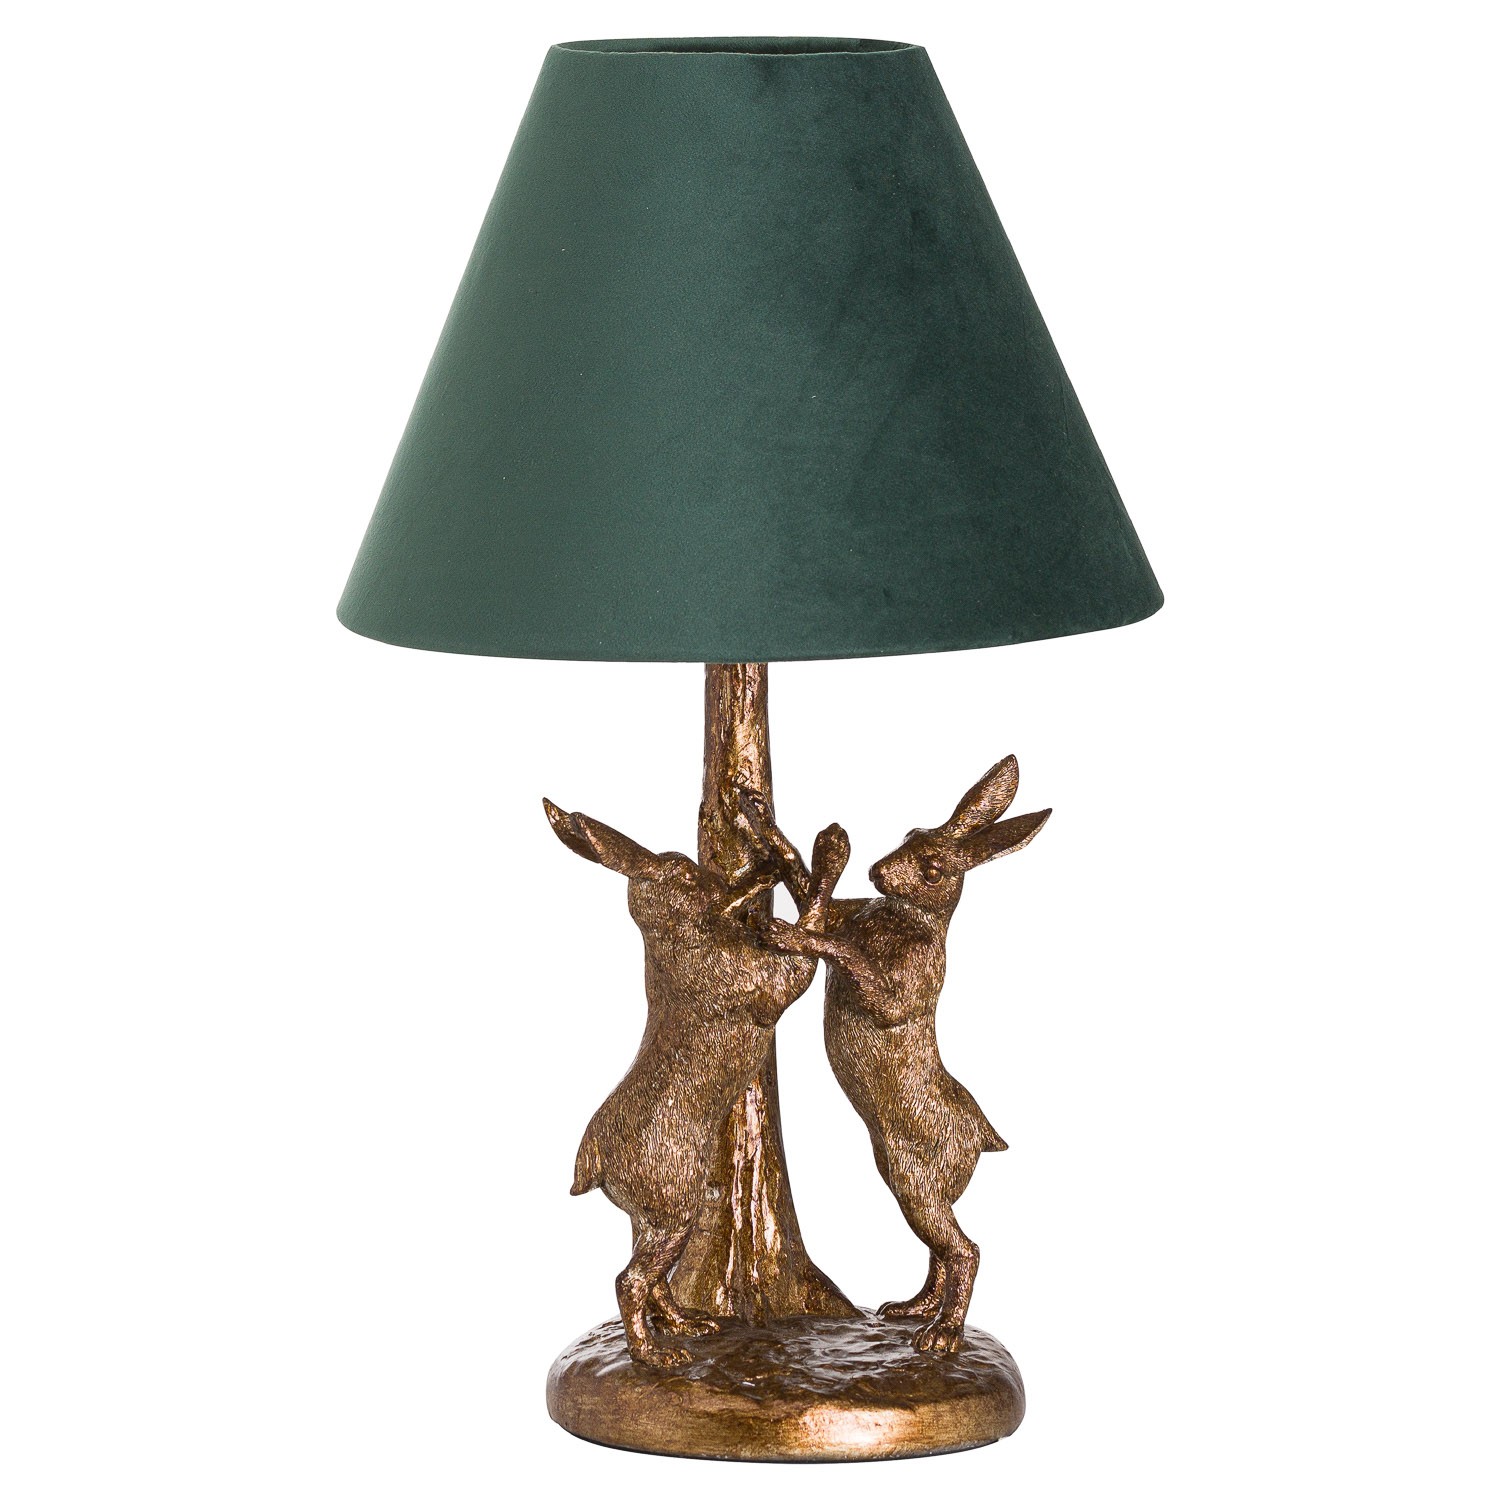 Estila Designová stolní lampa Liebre se zlatým podstavcem se zajíci as tmavozeleným stínítkem 48cm